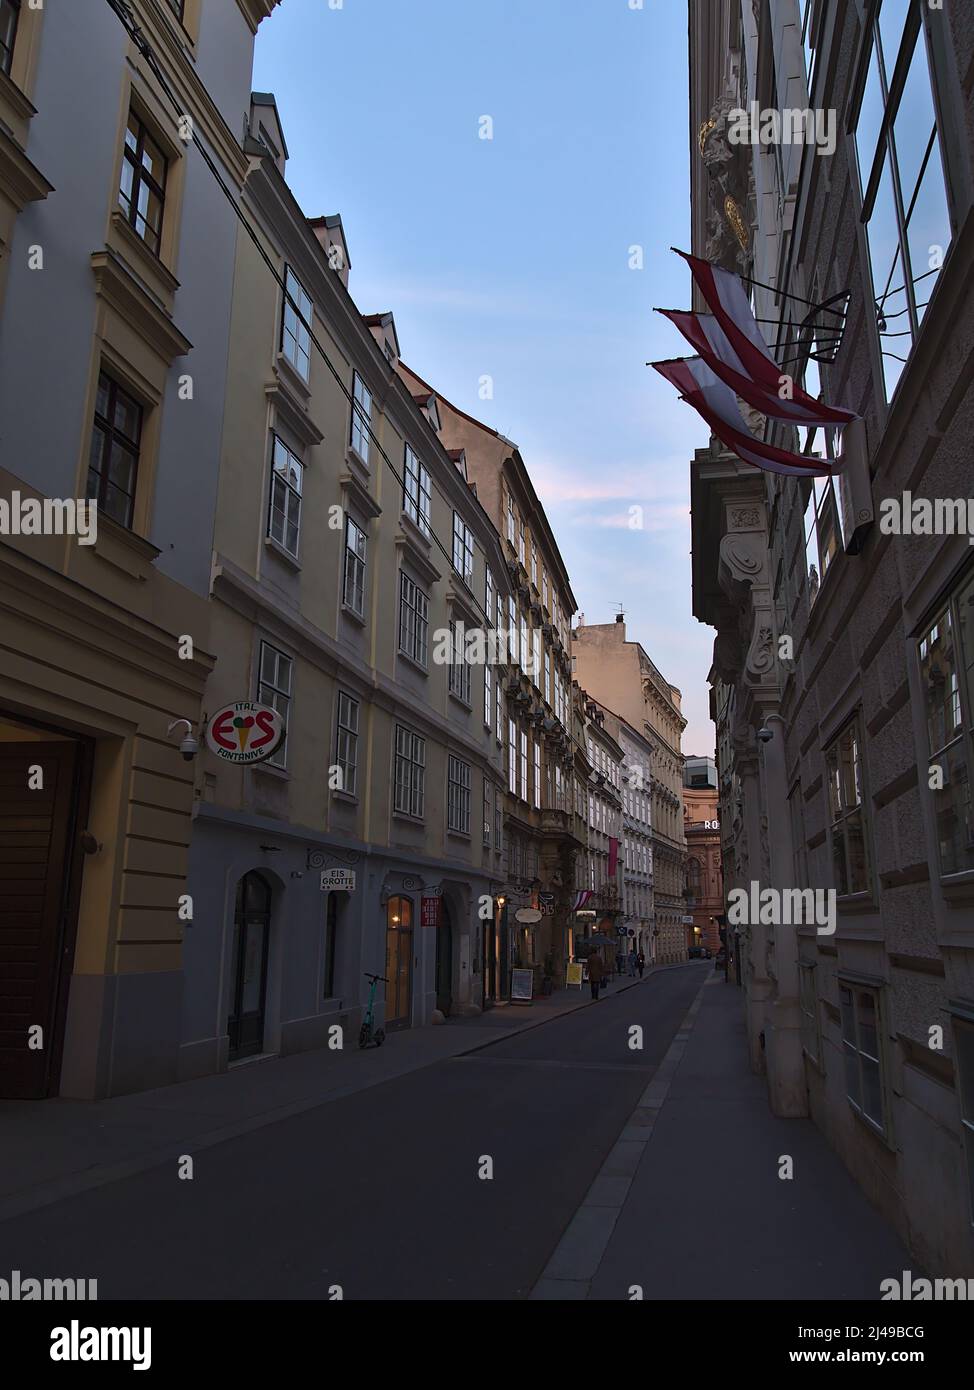 La prospettiva di Himmelpfortgasse nel centro storico di Vienna, Austria, in serata con negozi in edifici storici. Foto Stock